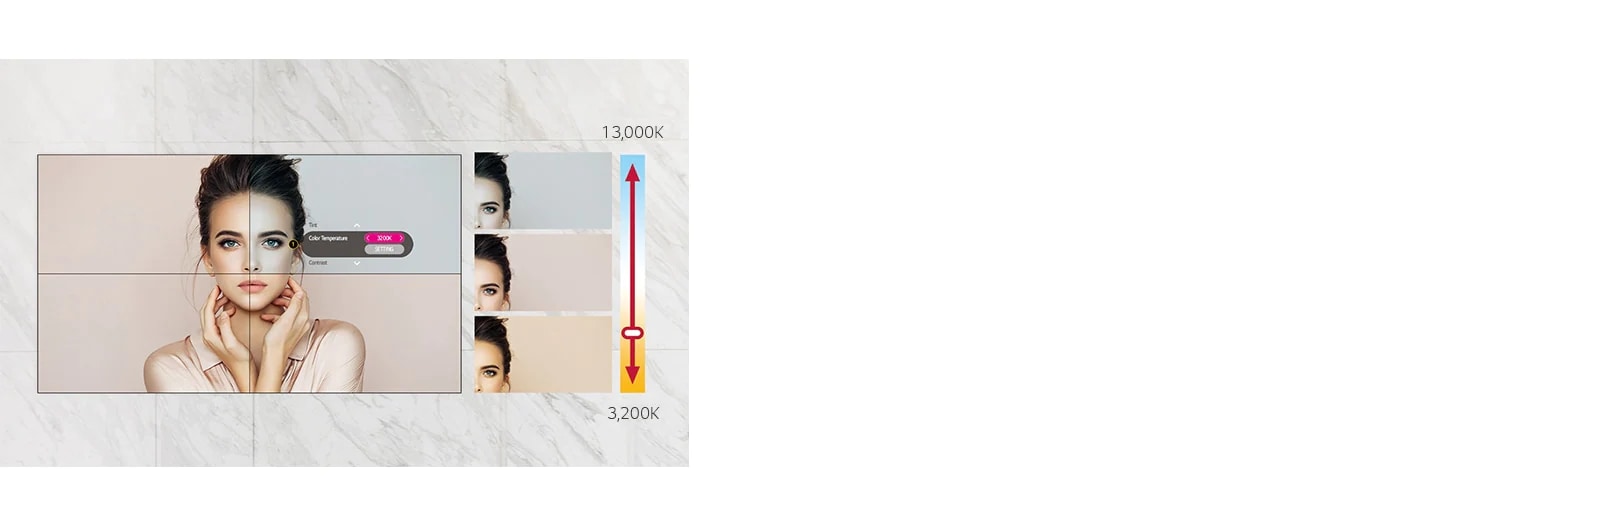 La serie VL5G-M puede ajustar la temperatura de color de 3,200 K a 13,000 K en unidades de 100 K.